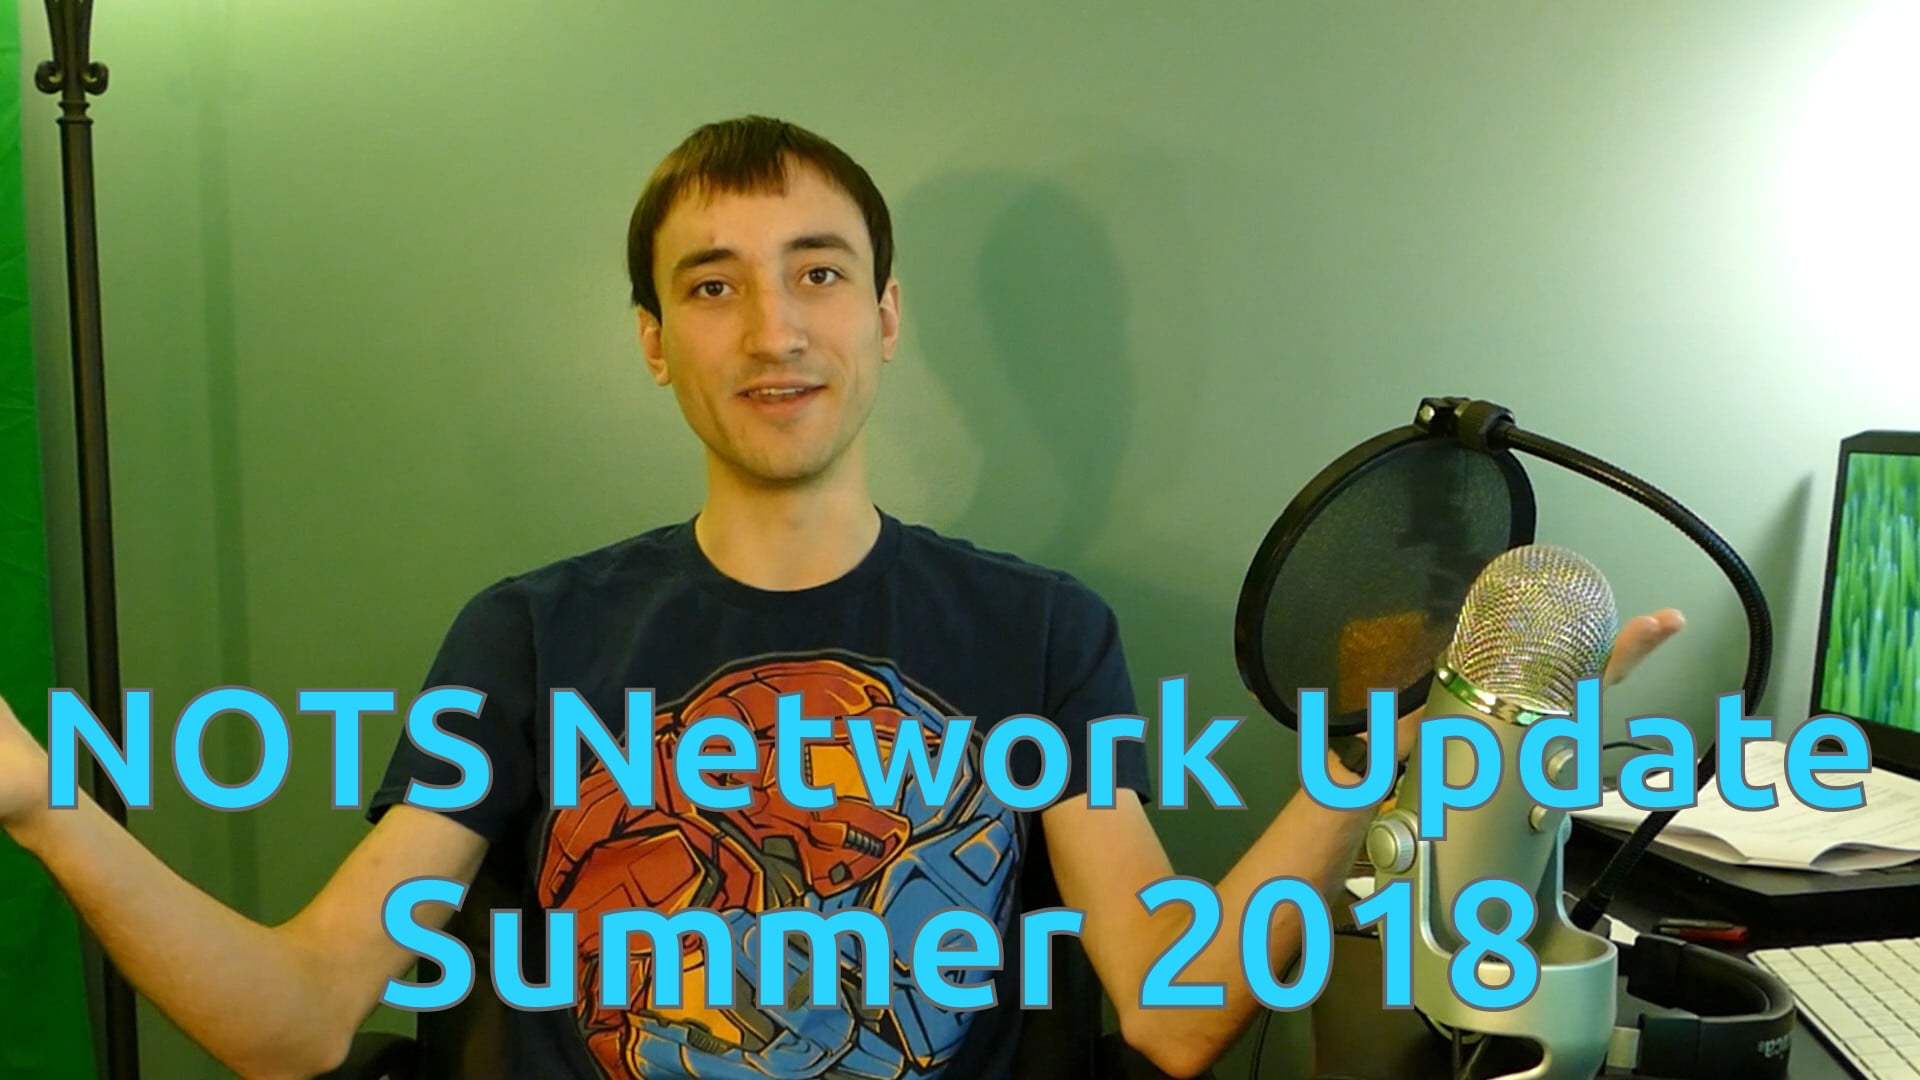 NOTS Network Update - Summer 2018